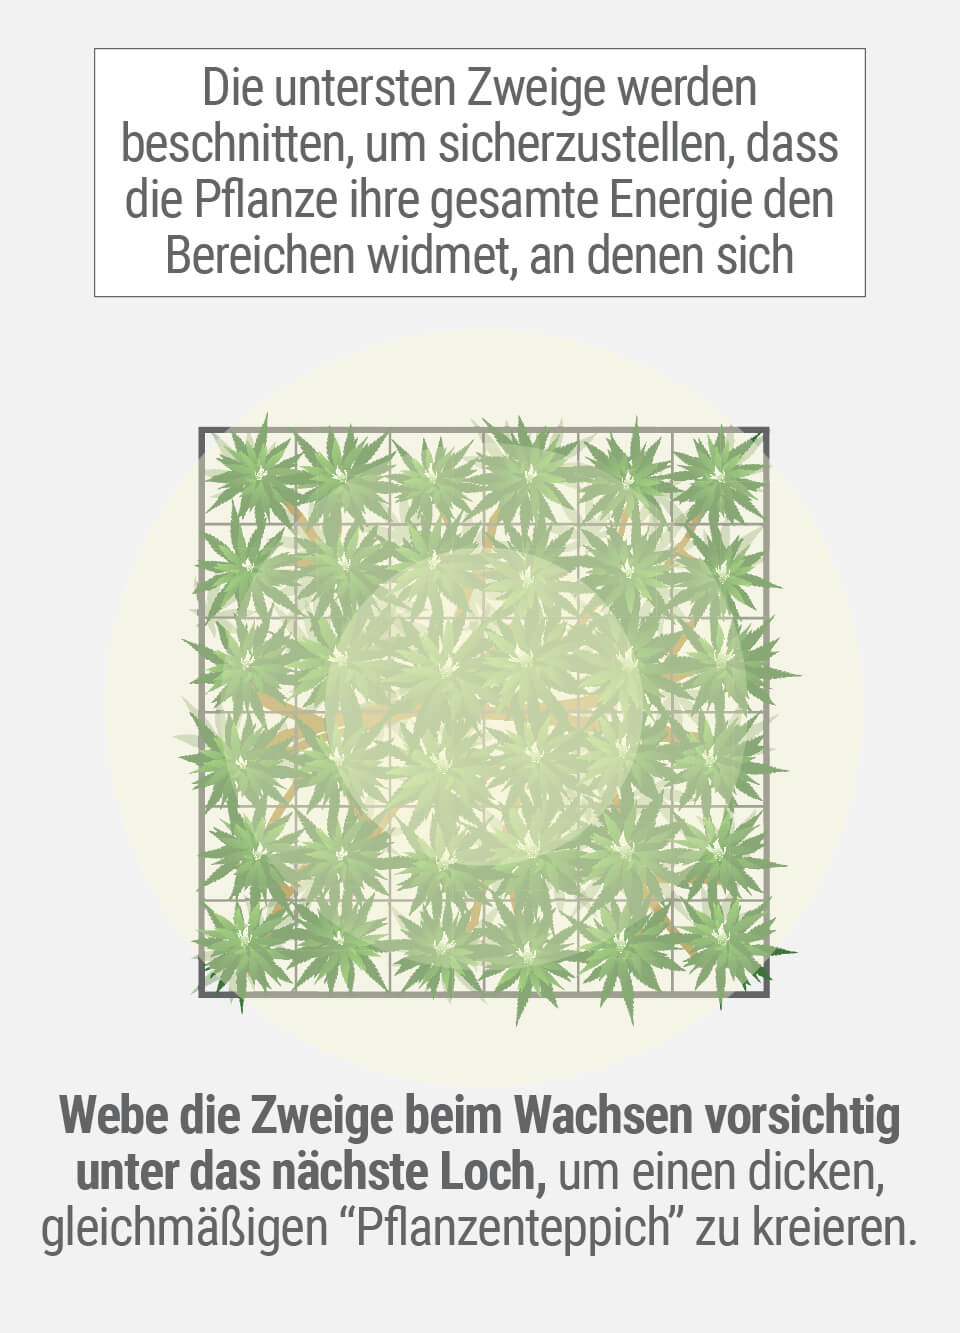 3 Wachsende Cannabis mit der SCROG (Screen of Green) Methode